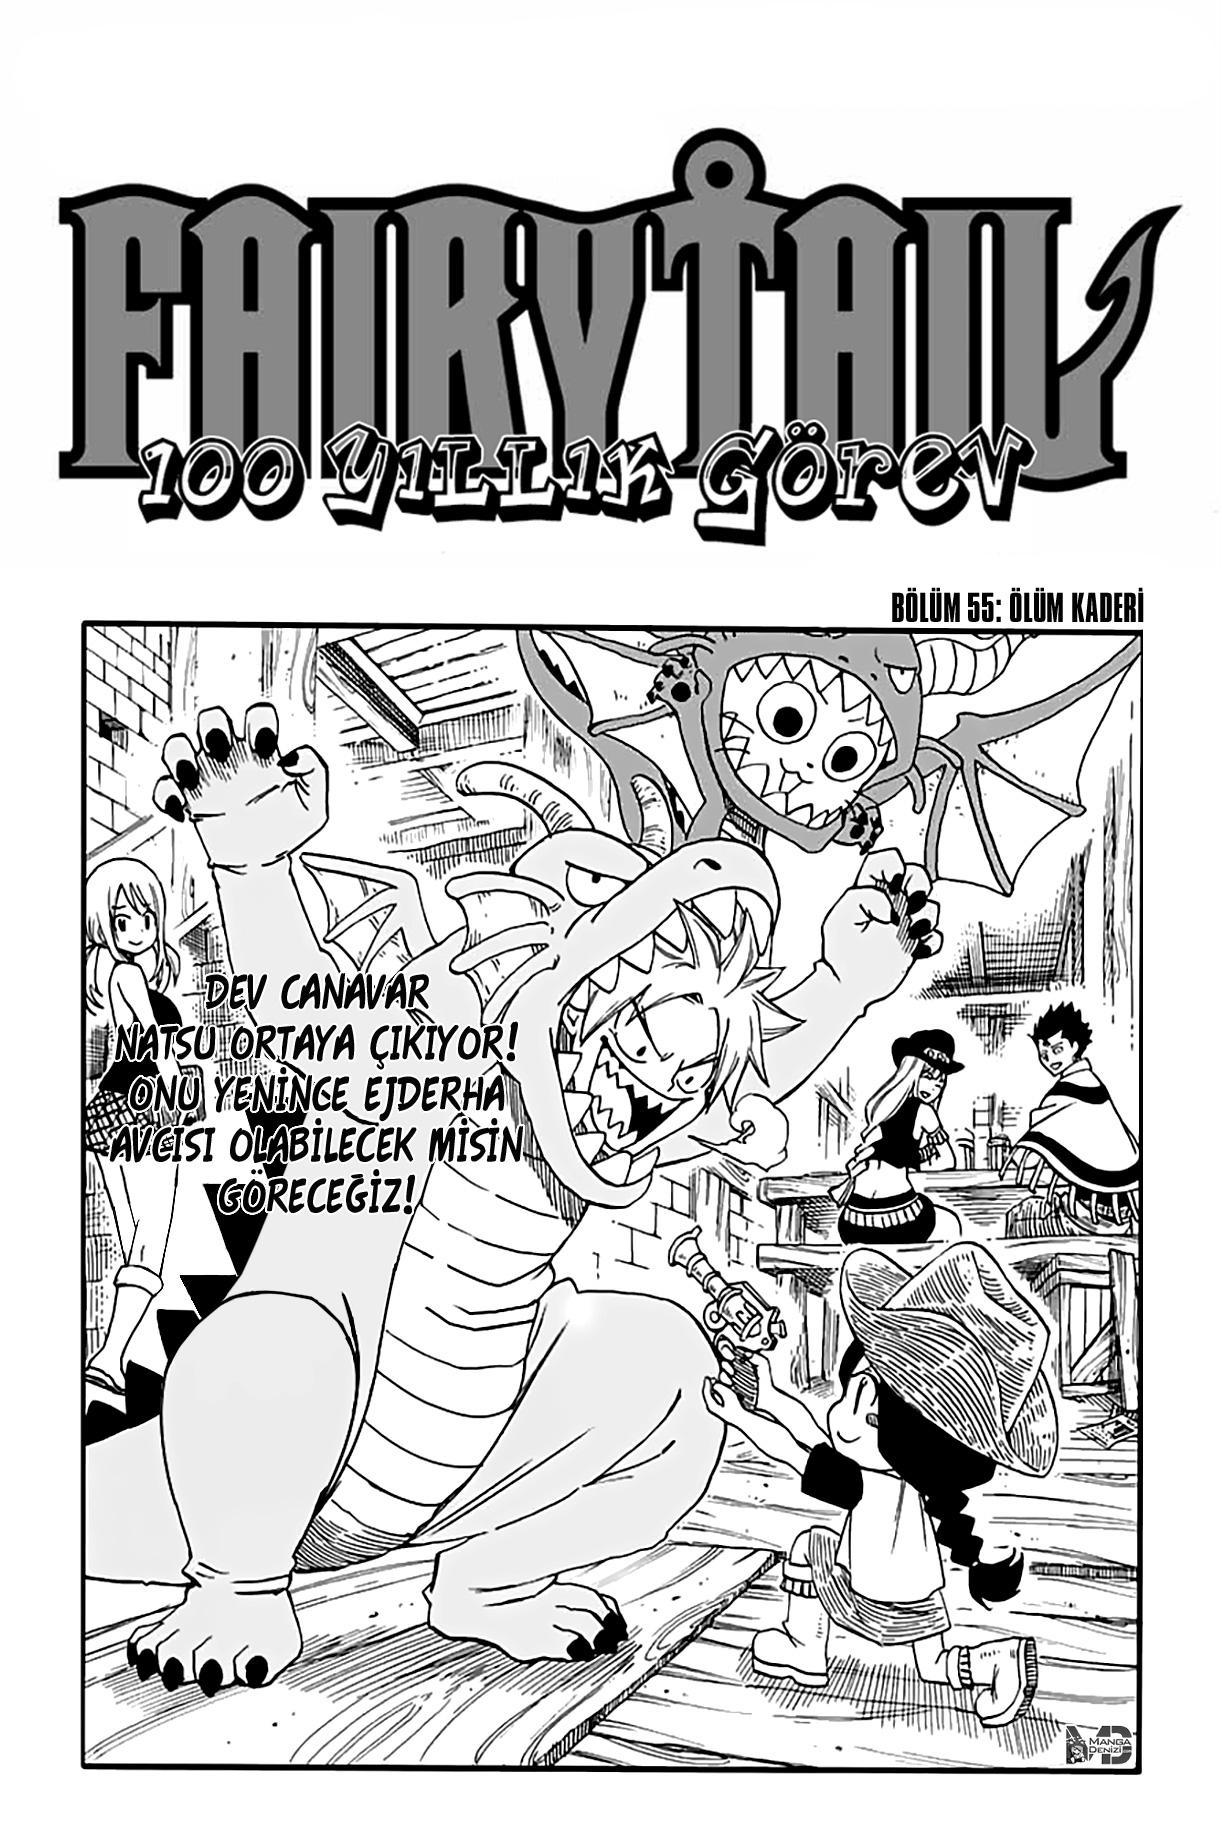 Fairy Tail: 100 Years Quest mangasının 055 bölümünün 2. sayfasını okuyorsunuz.